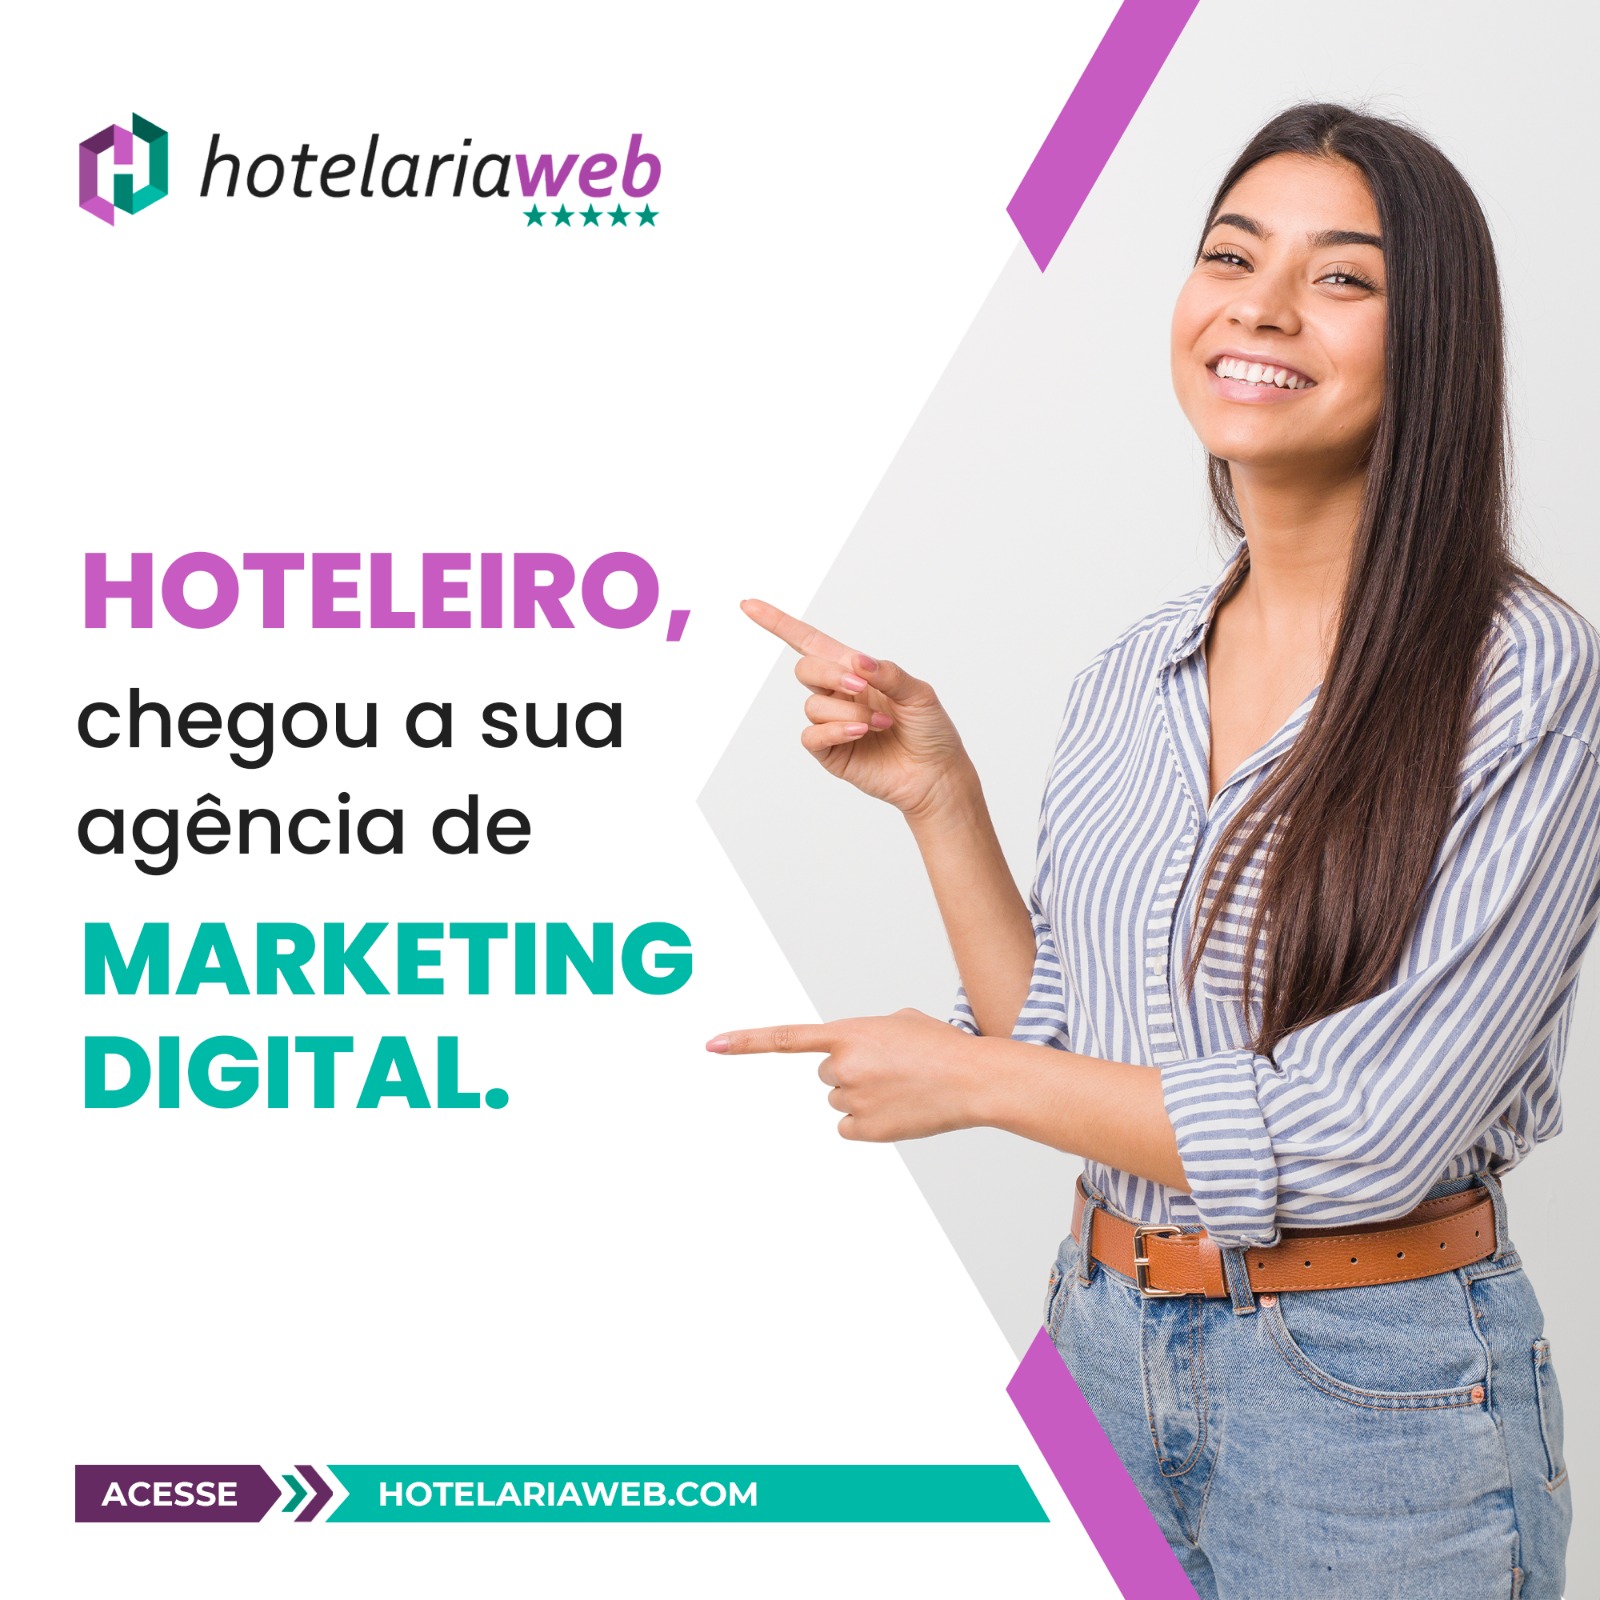 HotelariaWeb oferece serviços e sistema exclusivo de marketing para hotelaria e turismo